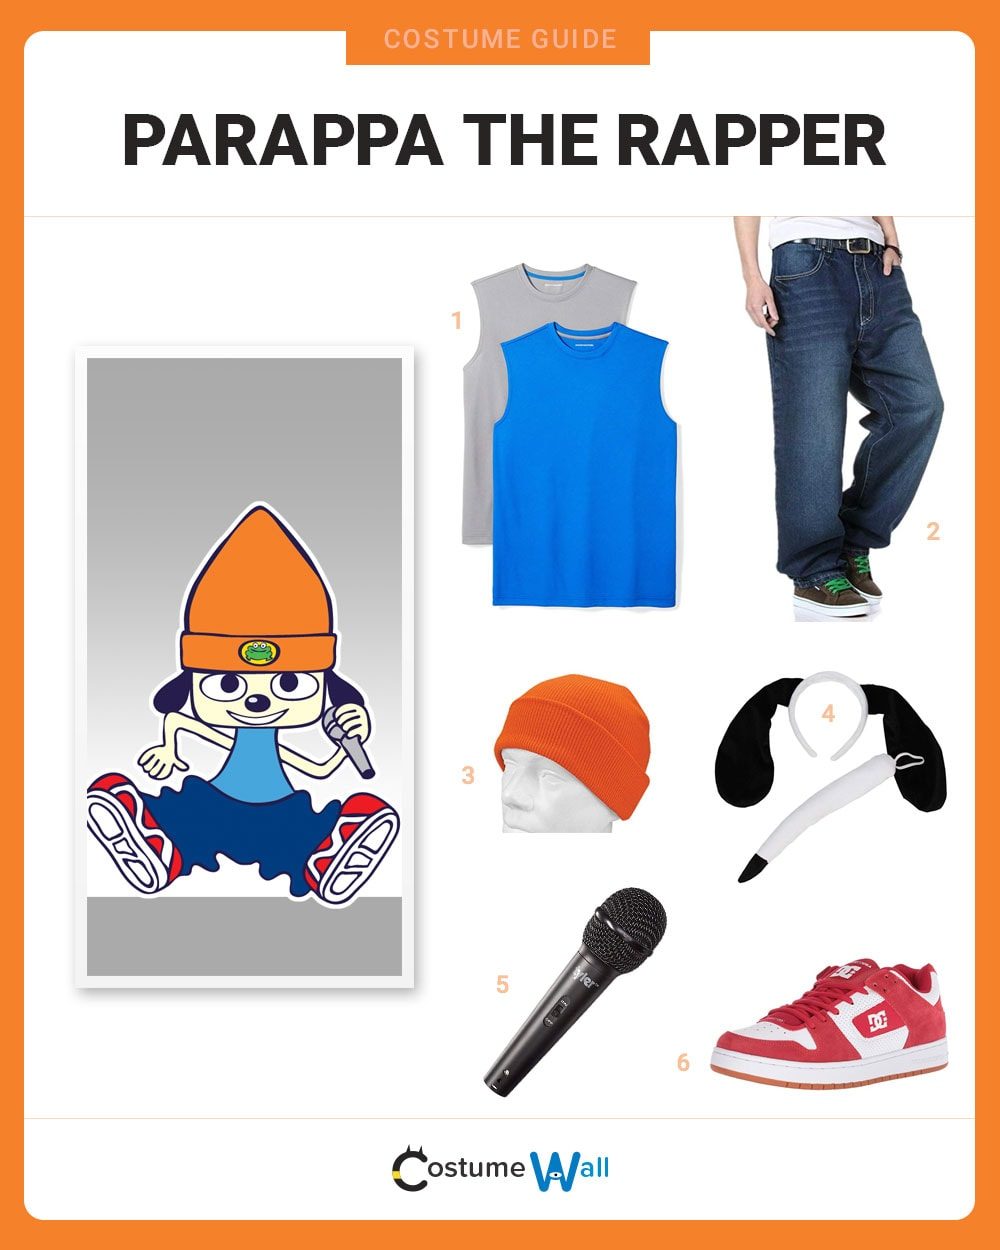 PaRappa the Rapper Costume Guide